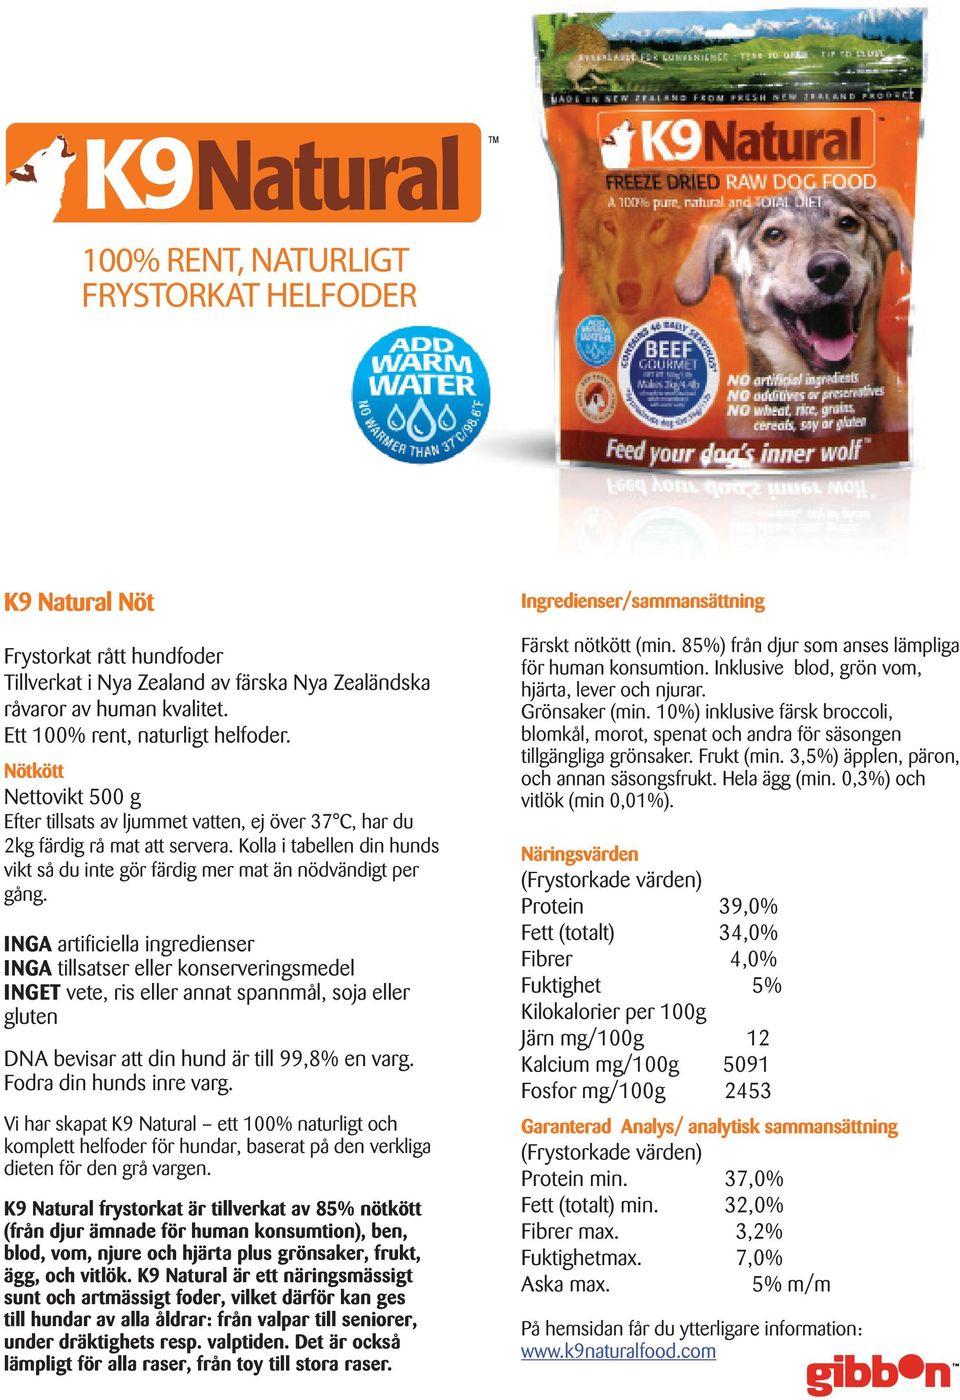 INGA artificiella ingredienser INGA tillsatser eller konserveringsmedel INGET vete, ris eller annat spannmål, soja eller gluten DNA bevisar att din hund är till 99,8% en varg.